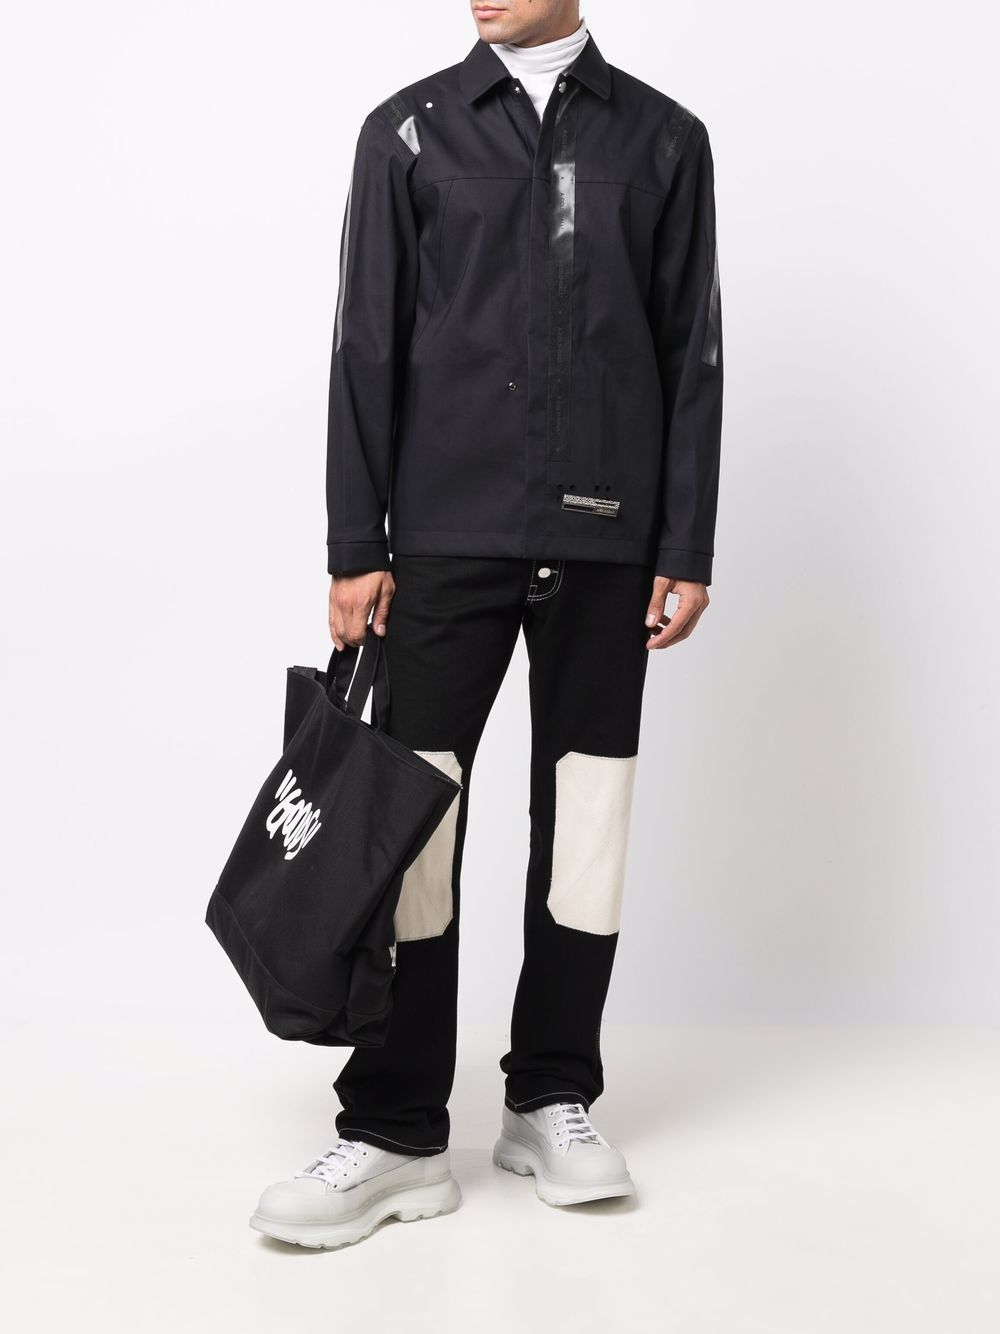 A-COLD-WALL* x Mackintosh overhemd met rubberen afwerking - Zwart